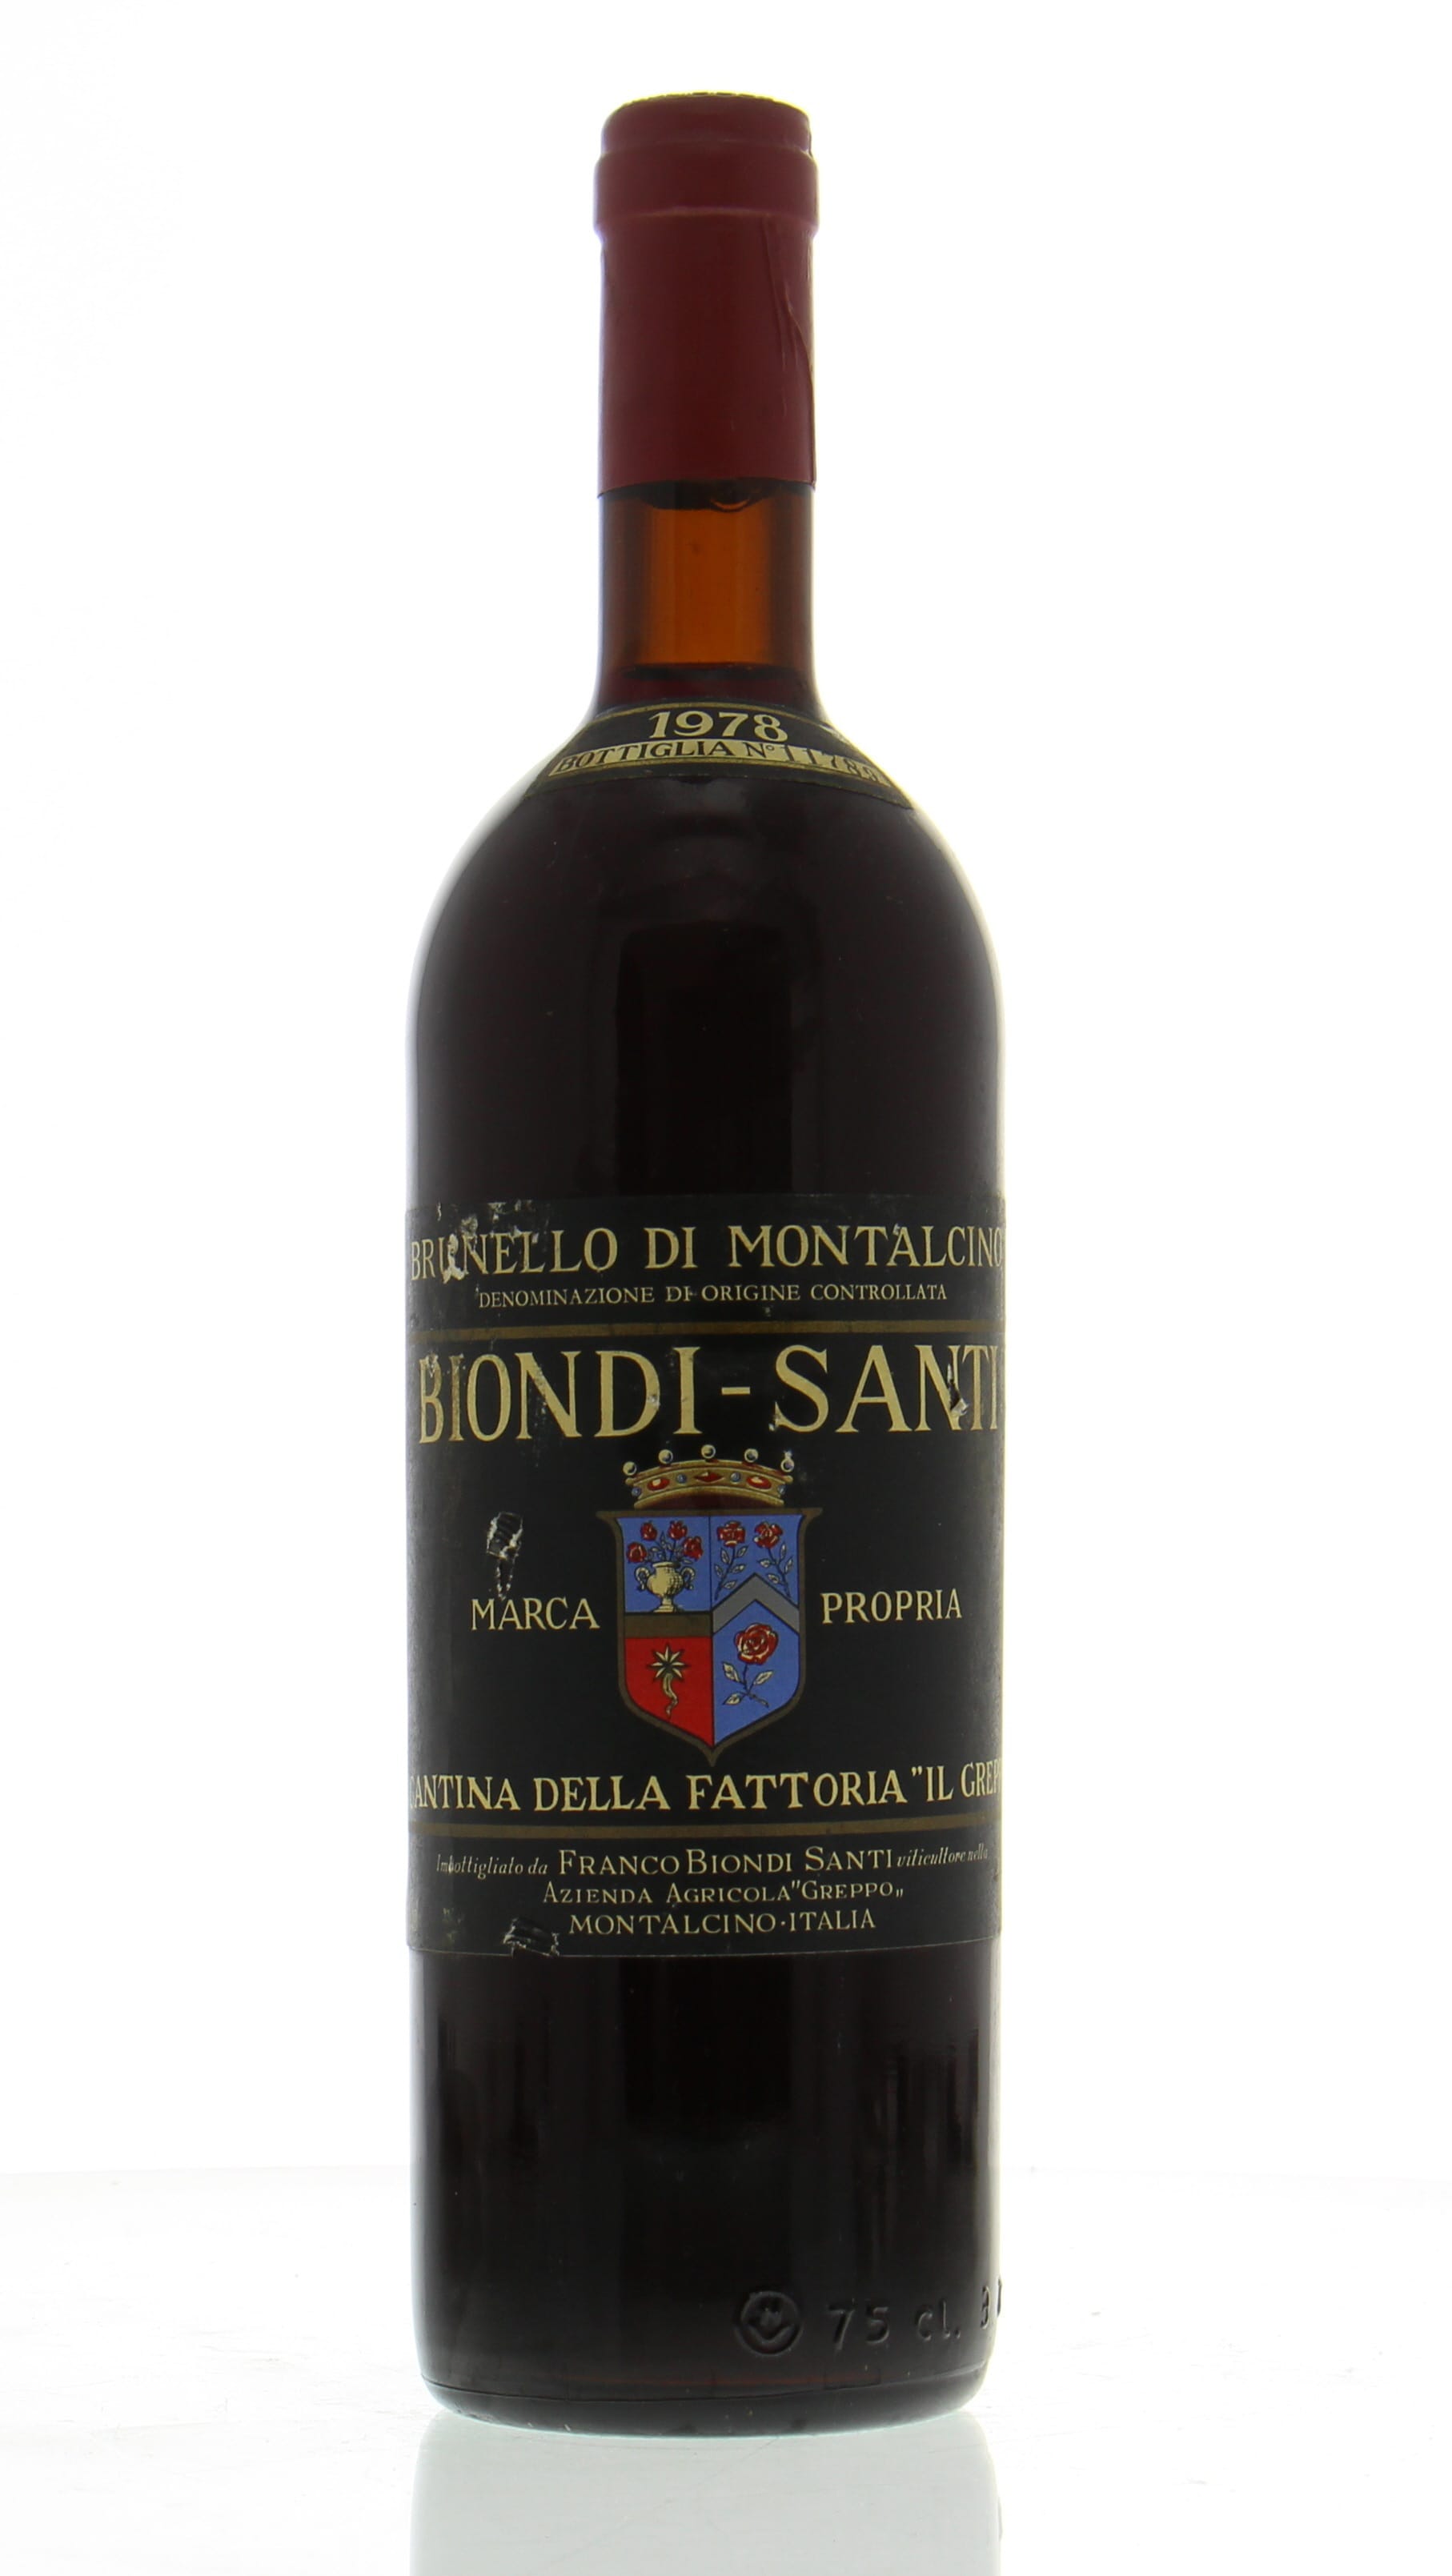 Biondi Santi - Brunello di Montalcino Tenuta Greppo 1978 Base of neck